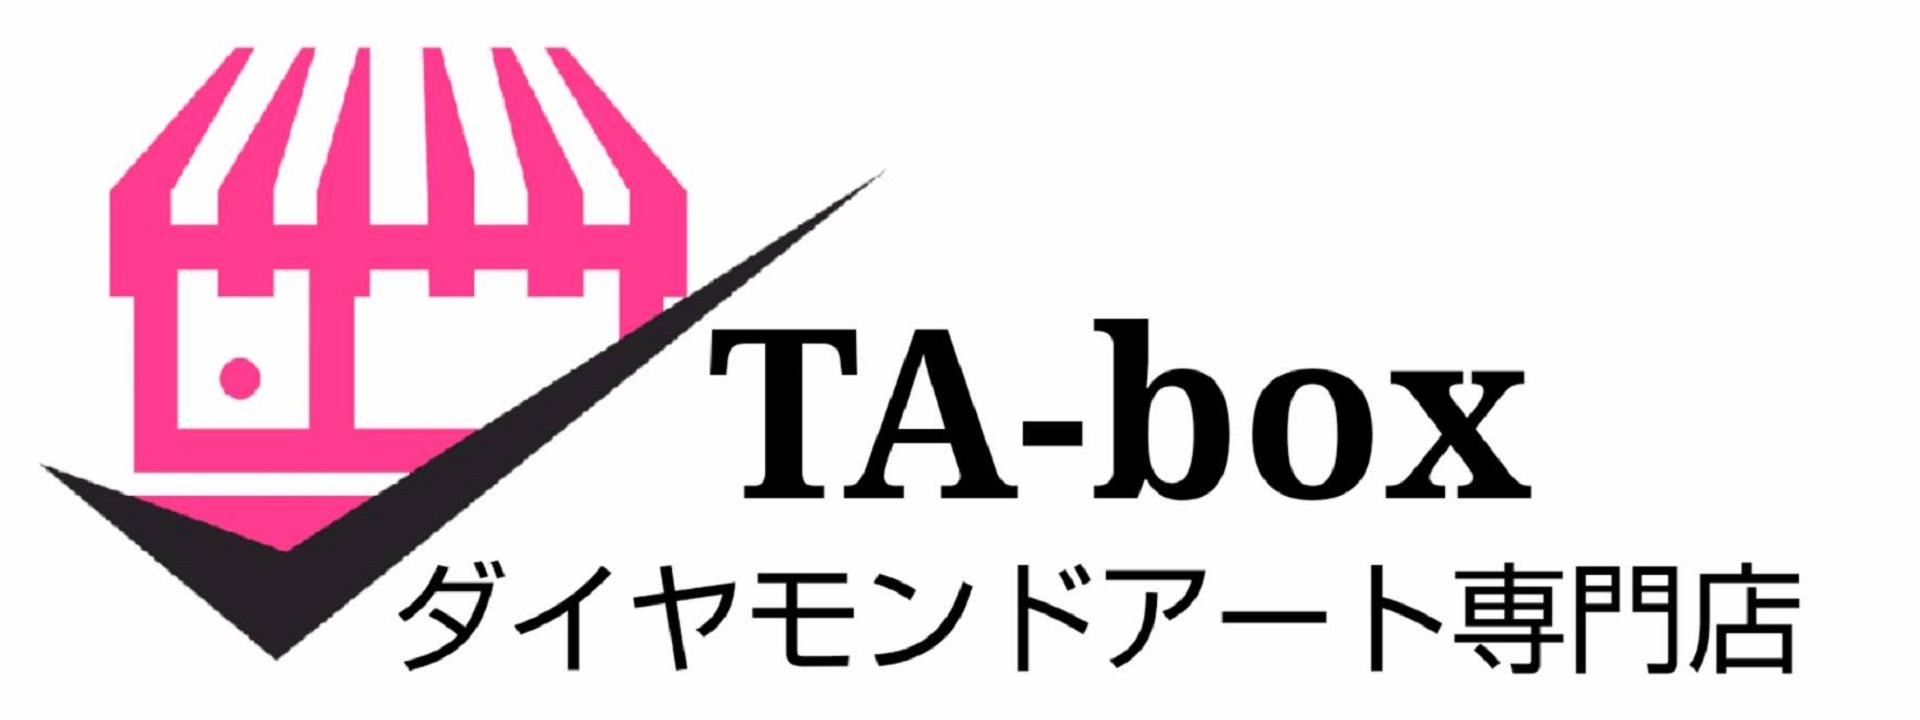 ダイアモンドアート専門店 TA-box